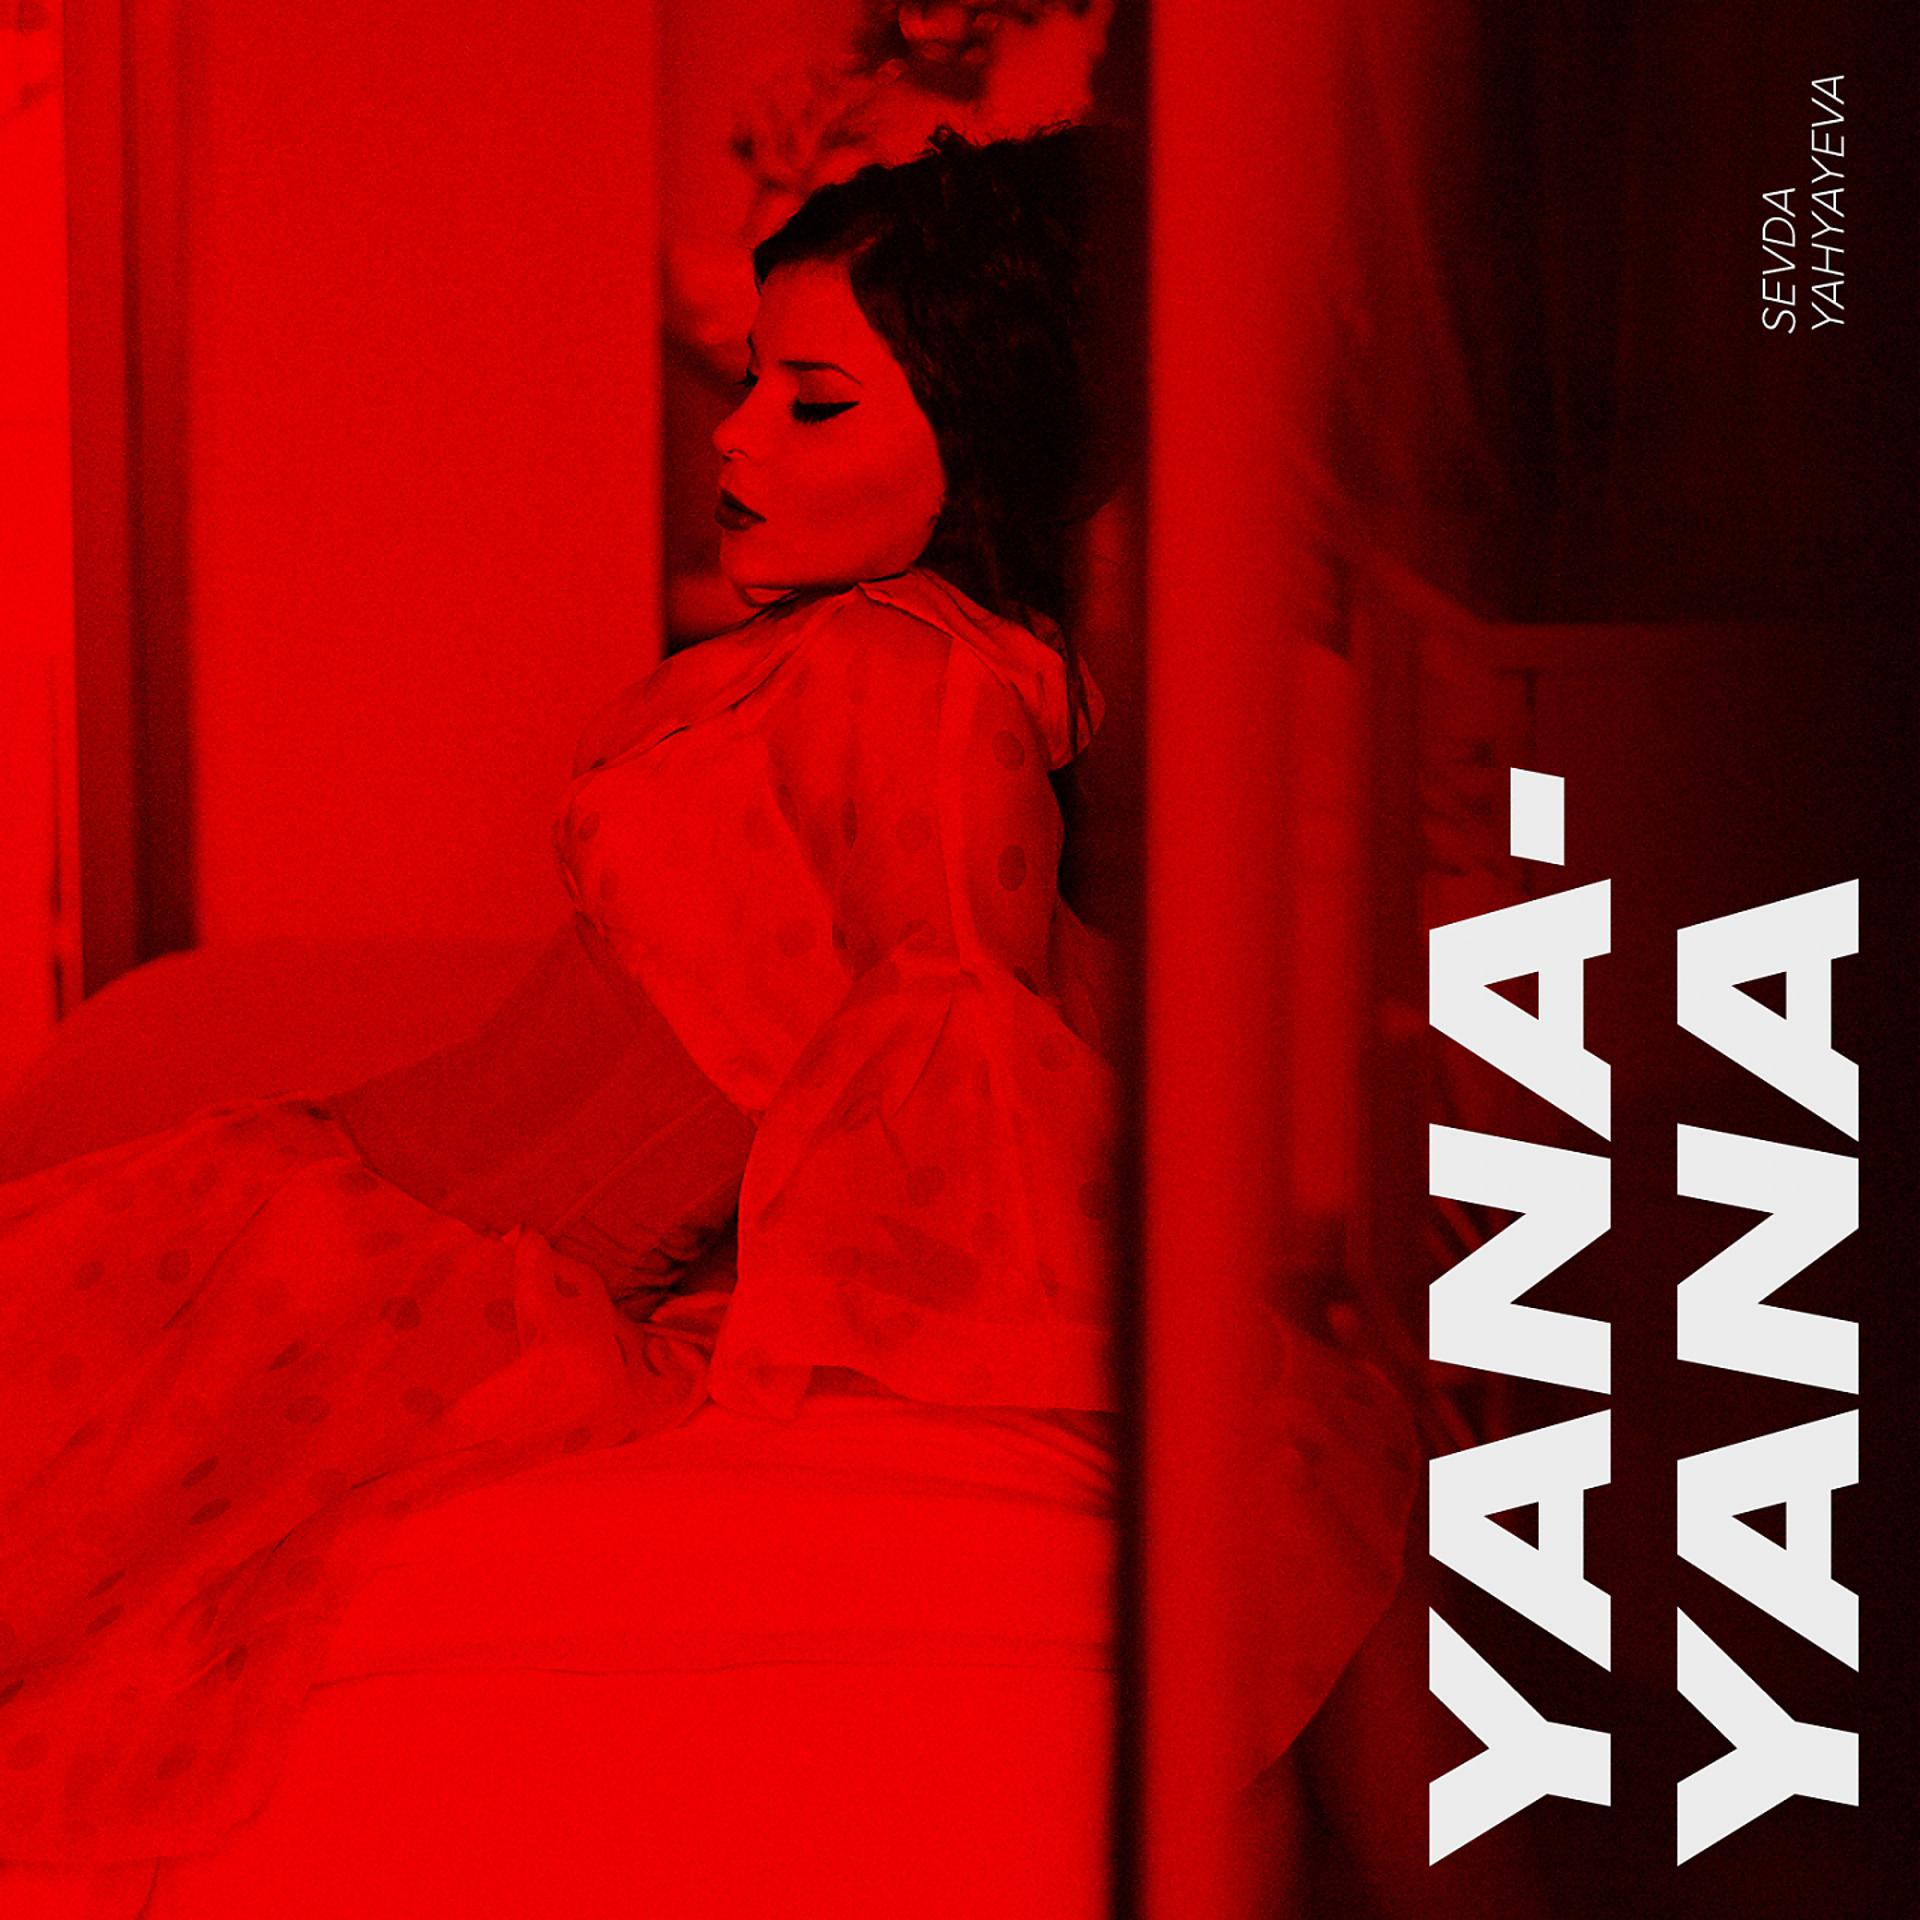 Постер альбома Yana-Yana